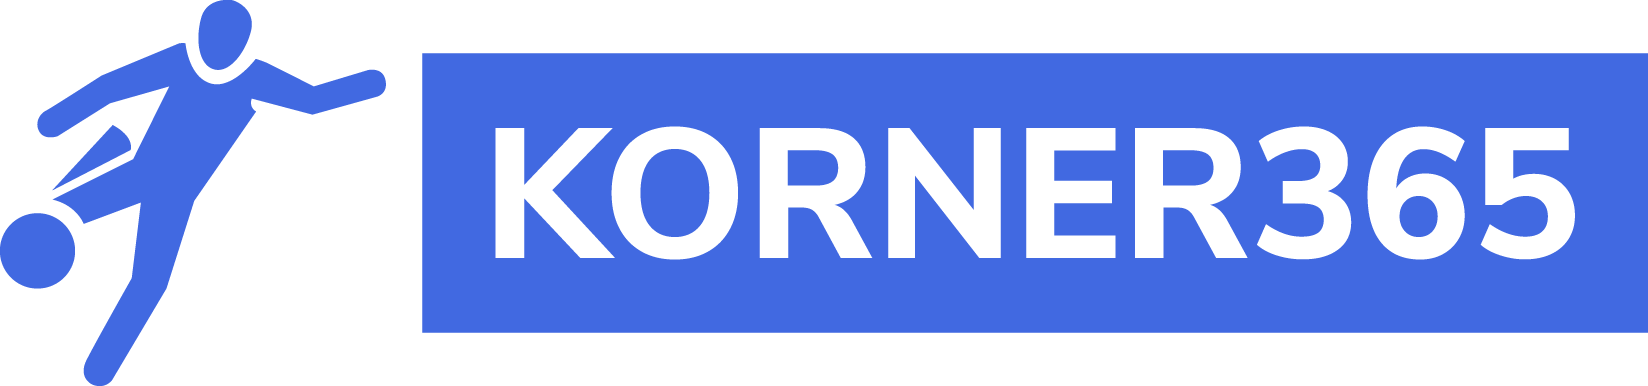 Korner 365 logo png